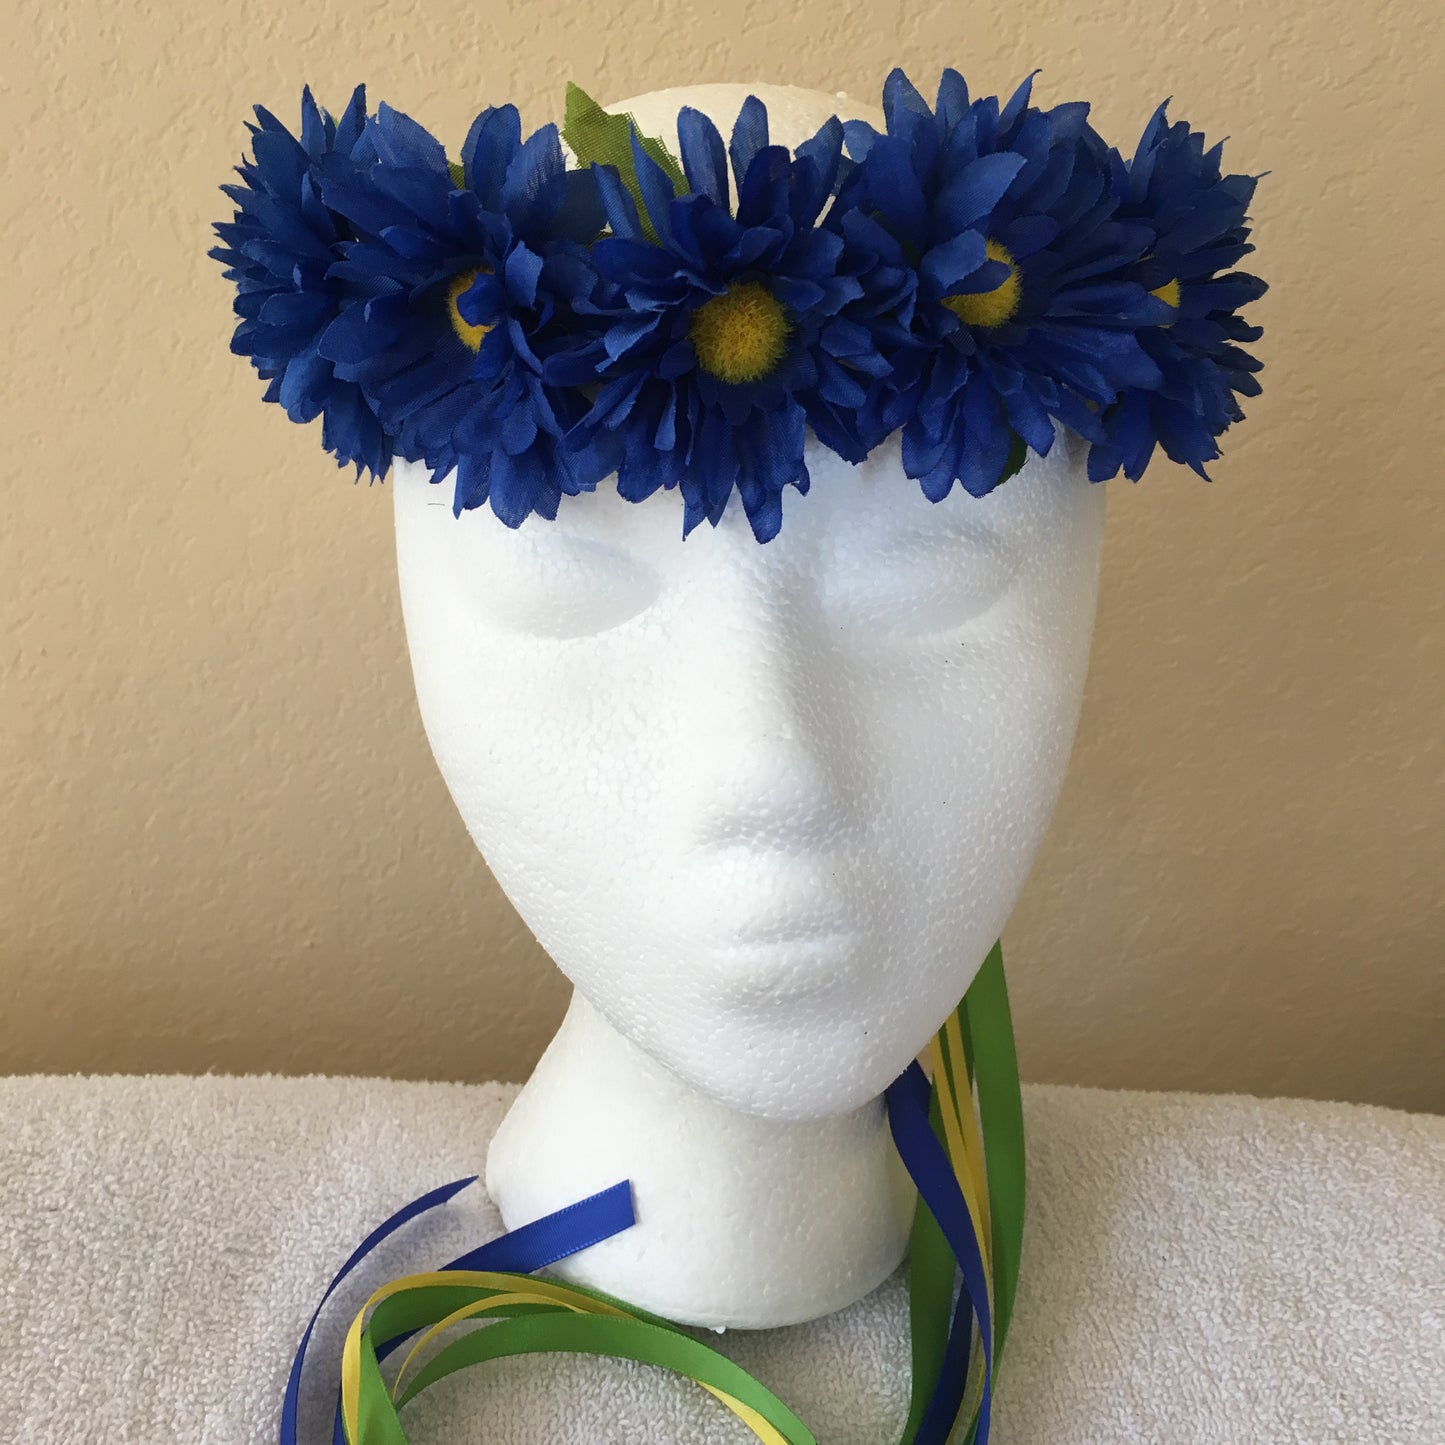 Small Wreath - All dark blue daisies (3)